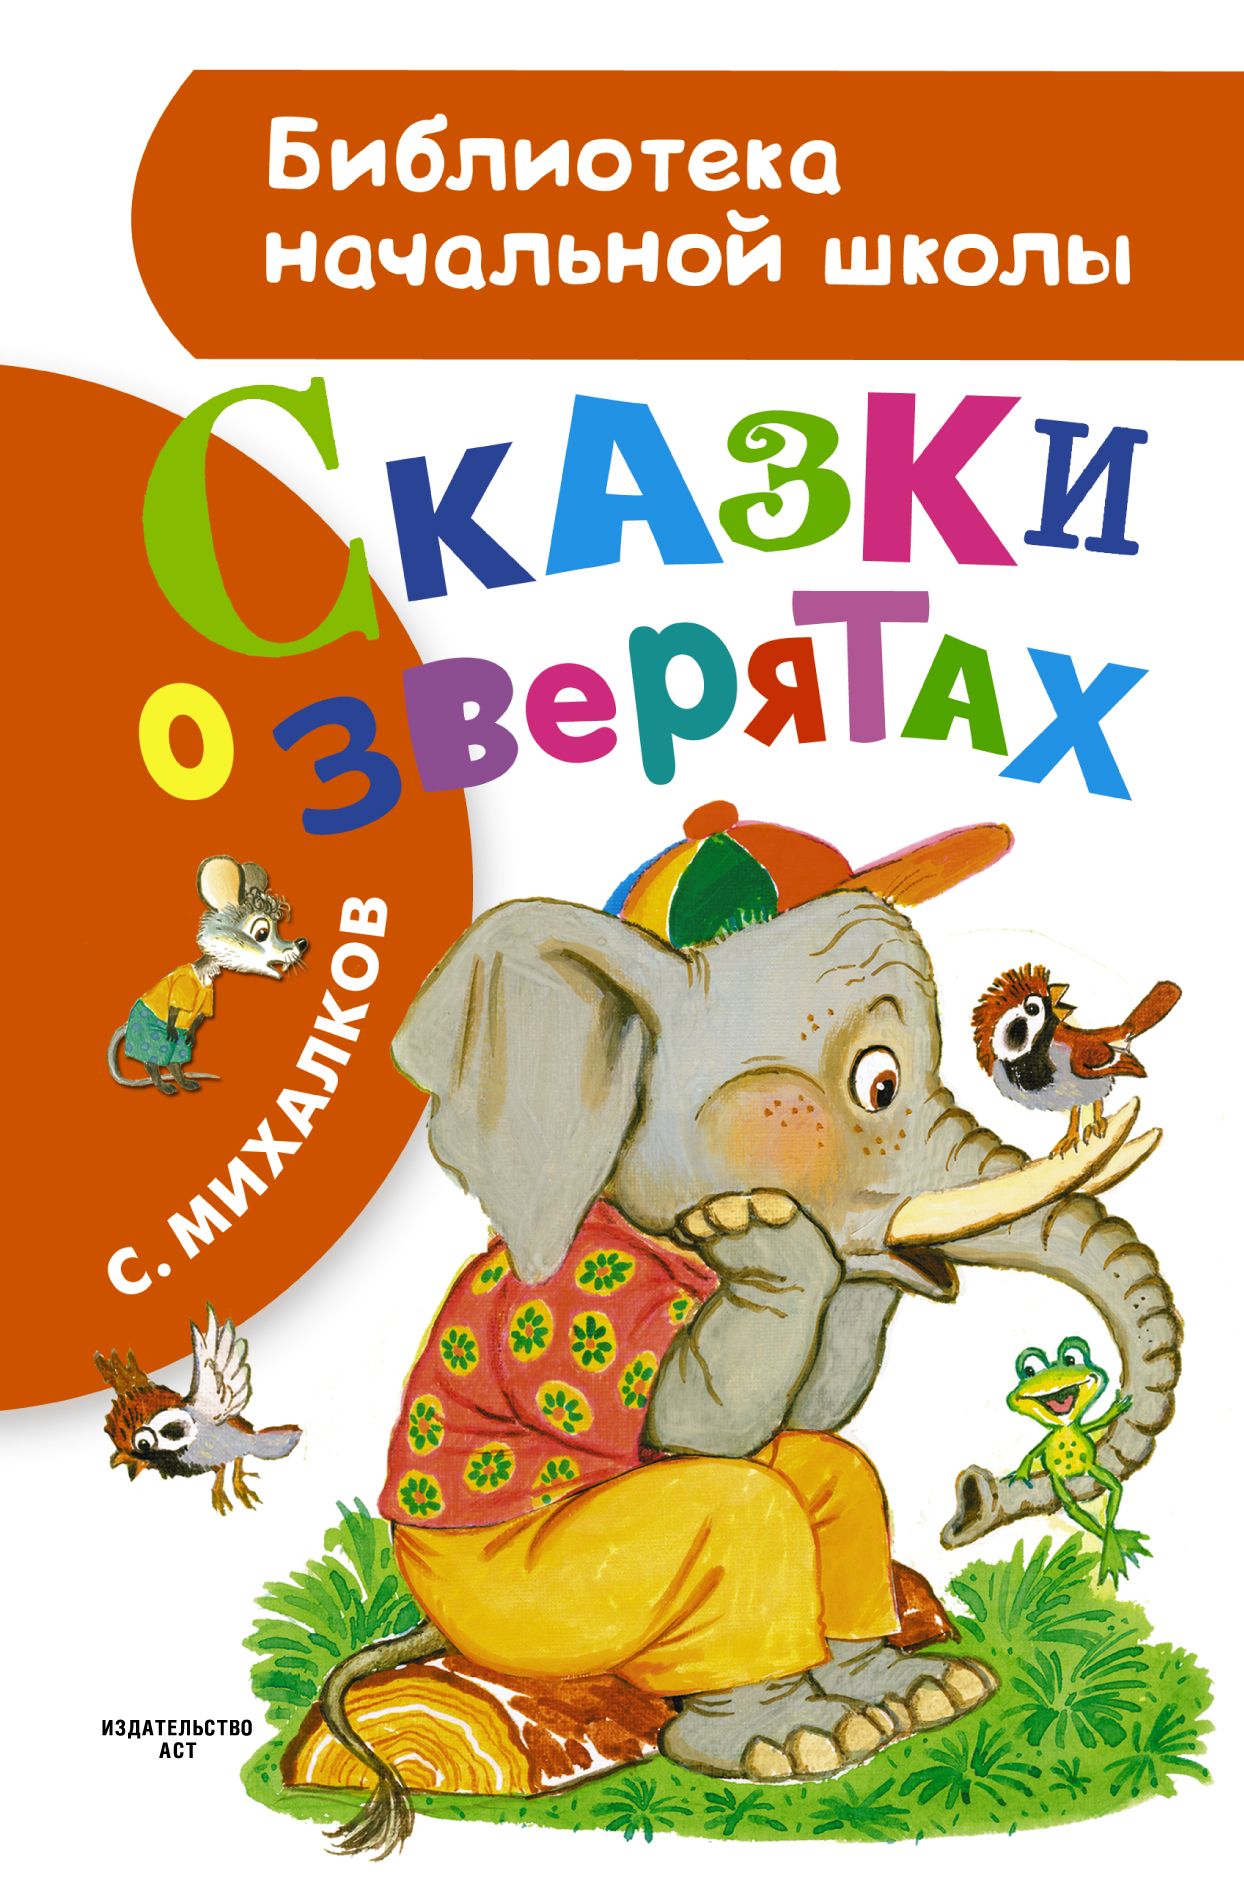 Книги про михалкова. Книги Михалкова для детей. Михалков книги для детей.